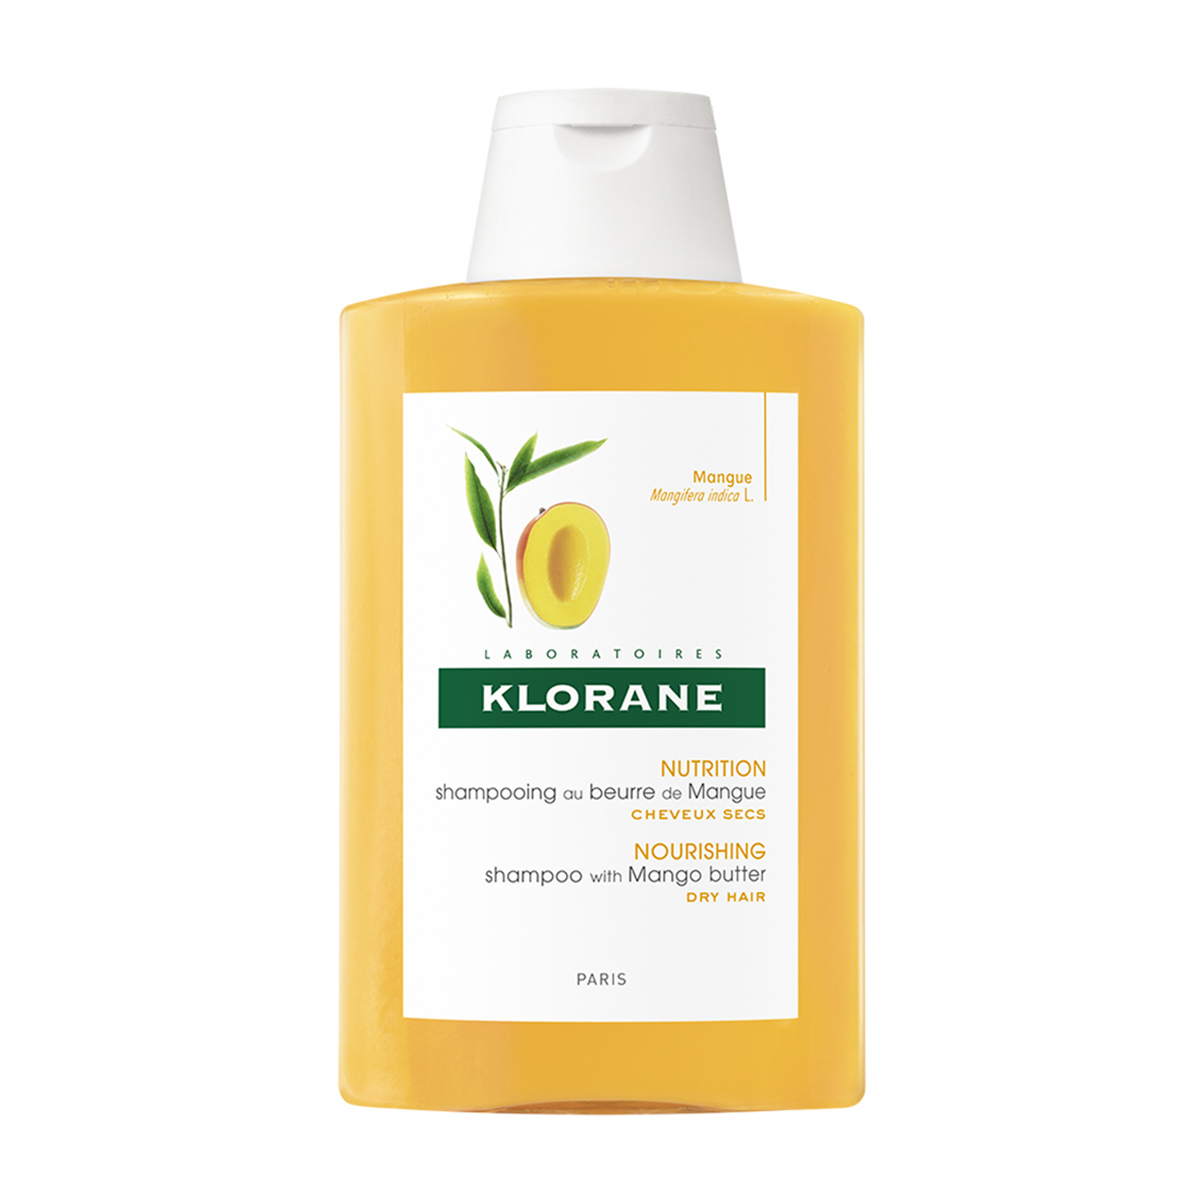 Sampon cu unt de mango pentru par uscat, Klorane, 200 ml